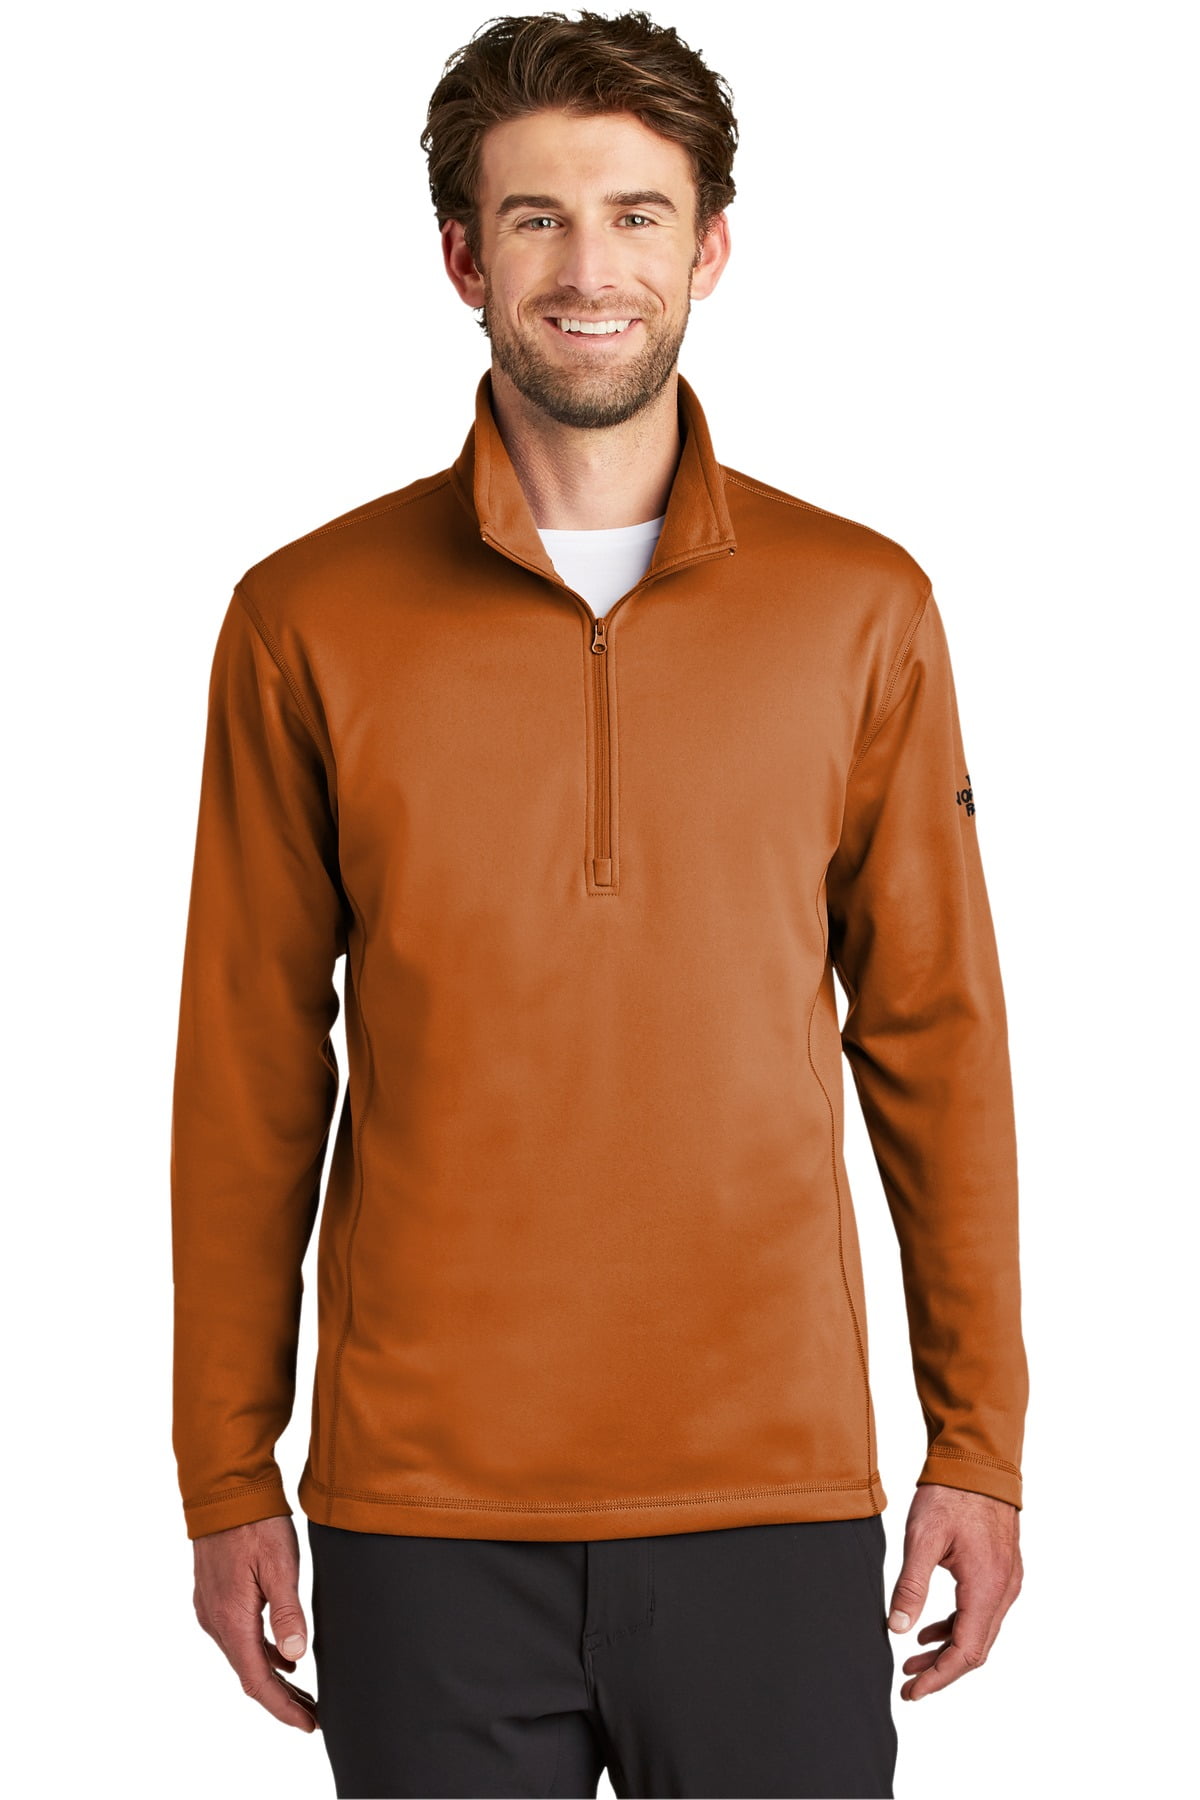 The North Face Men's Sweatshirt Long Sleeve Tech 1/4 Zip Fleece Outerwear  Top, Asphalt Grey, XL 